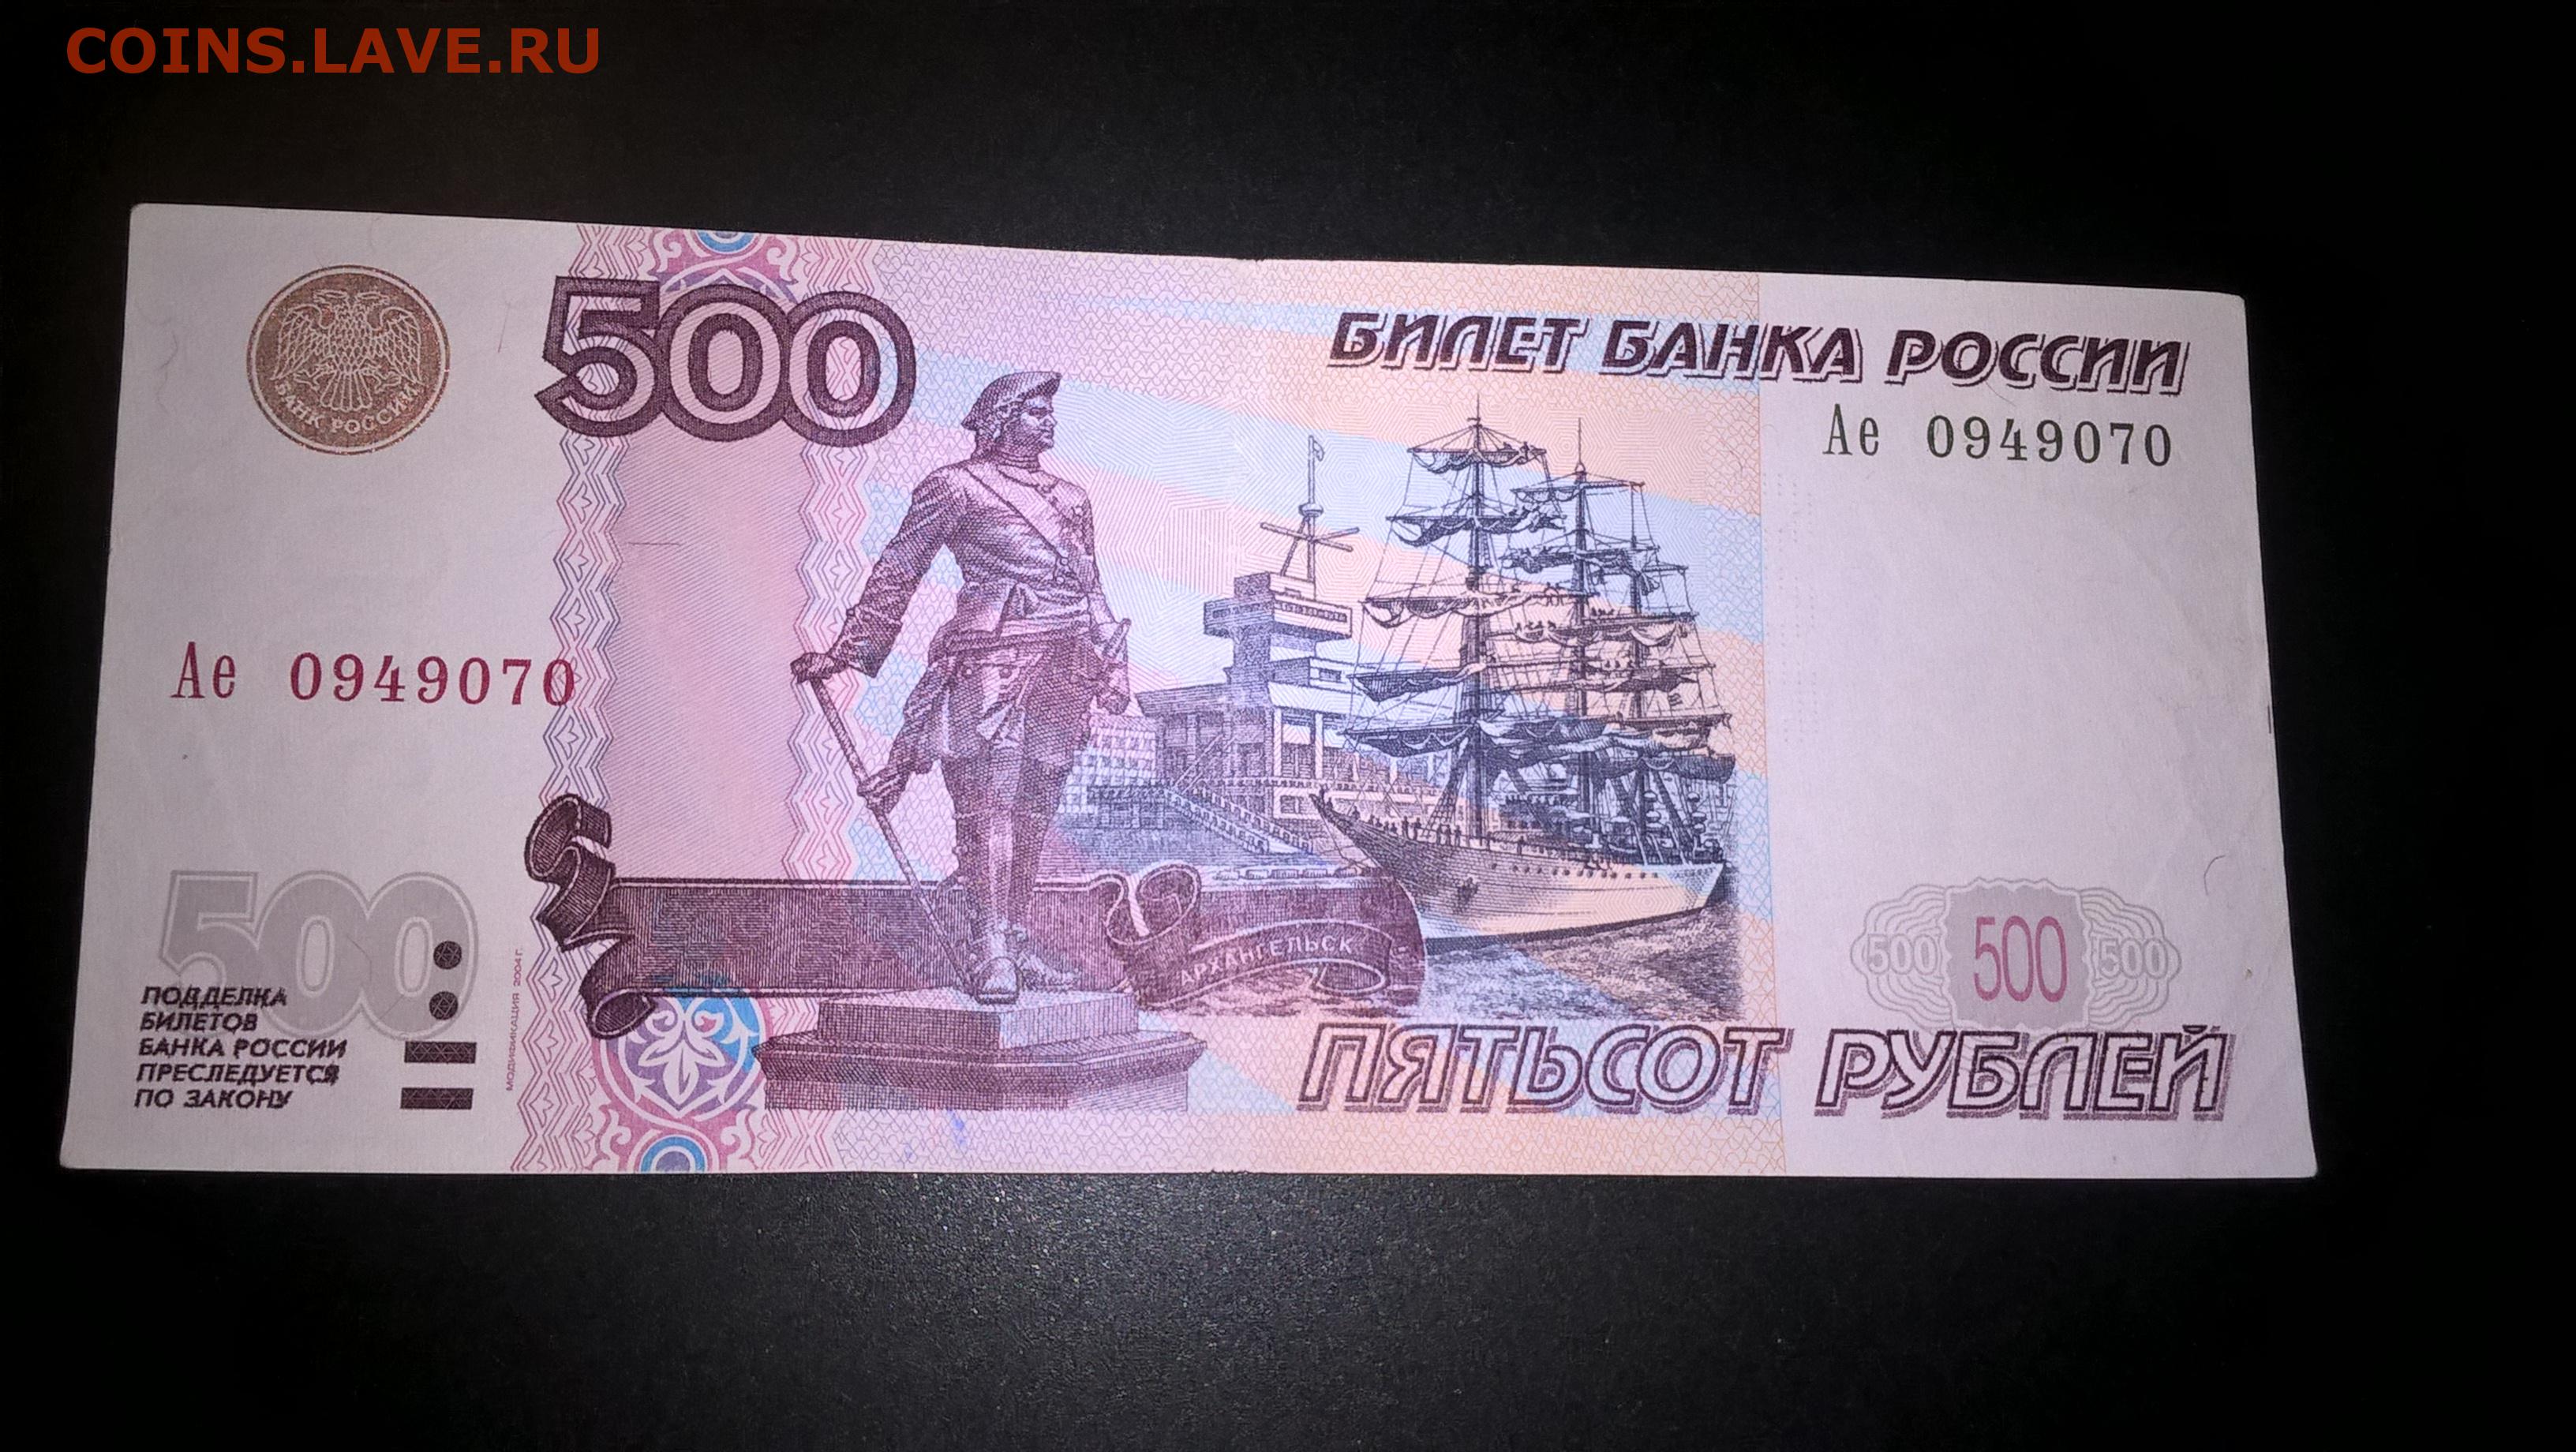 Вулкан 500 рублей. 500 Рублей 1997. Билет банка России 500 рублей. Пятьсот рублей 1997. Банкноты с автомобилями.